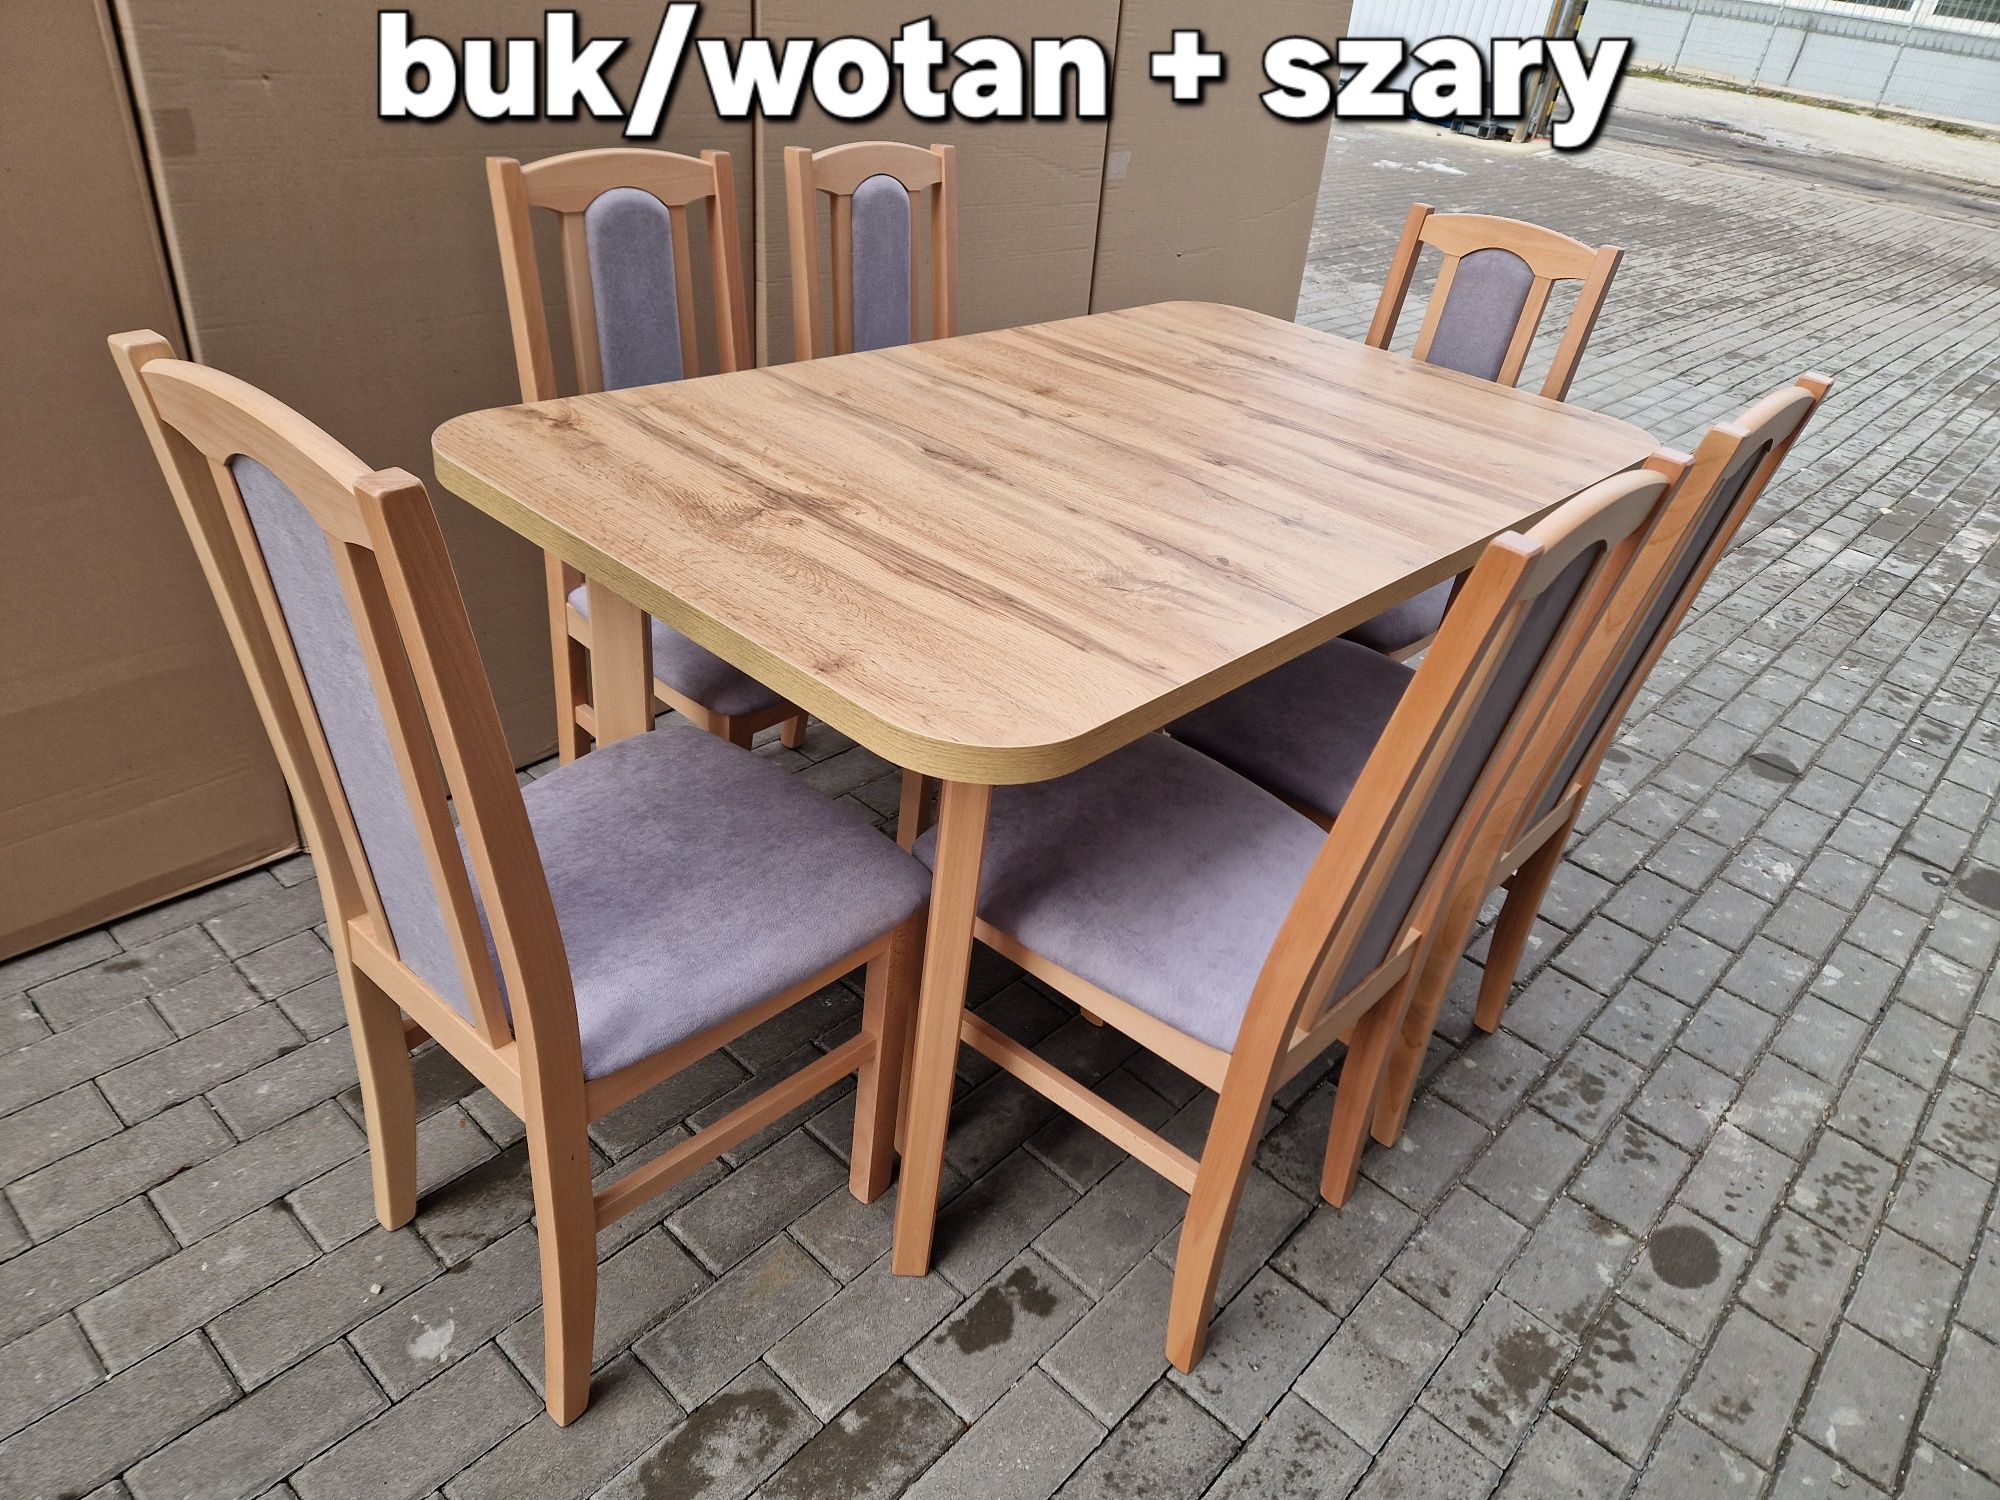 Stół rozkładany i 6 krzeseł, nowe, buk/wotan + szary, dostawa PL